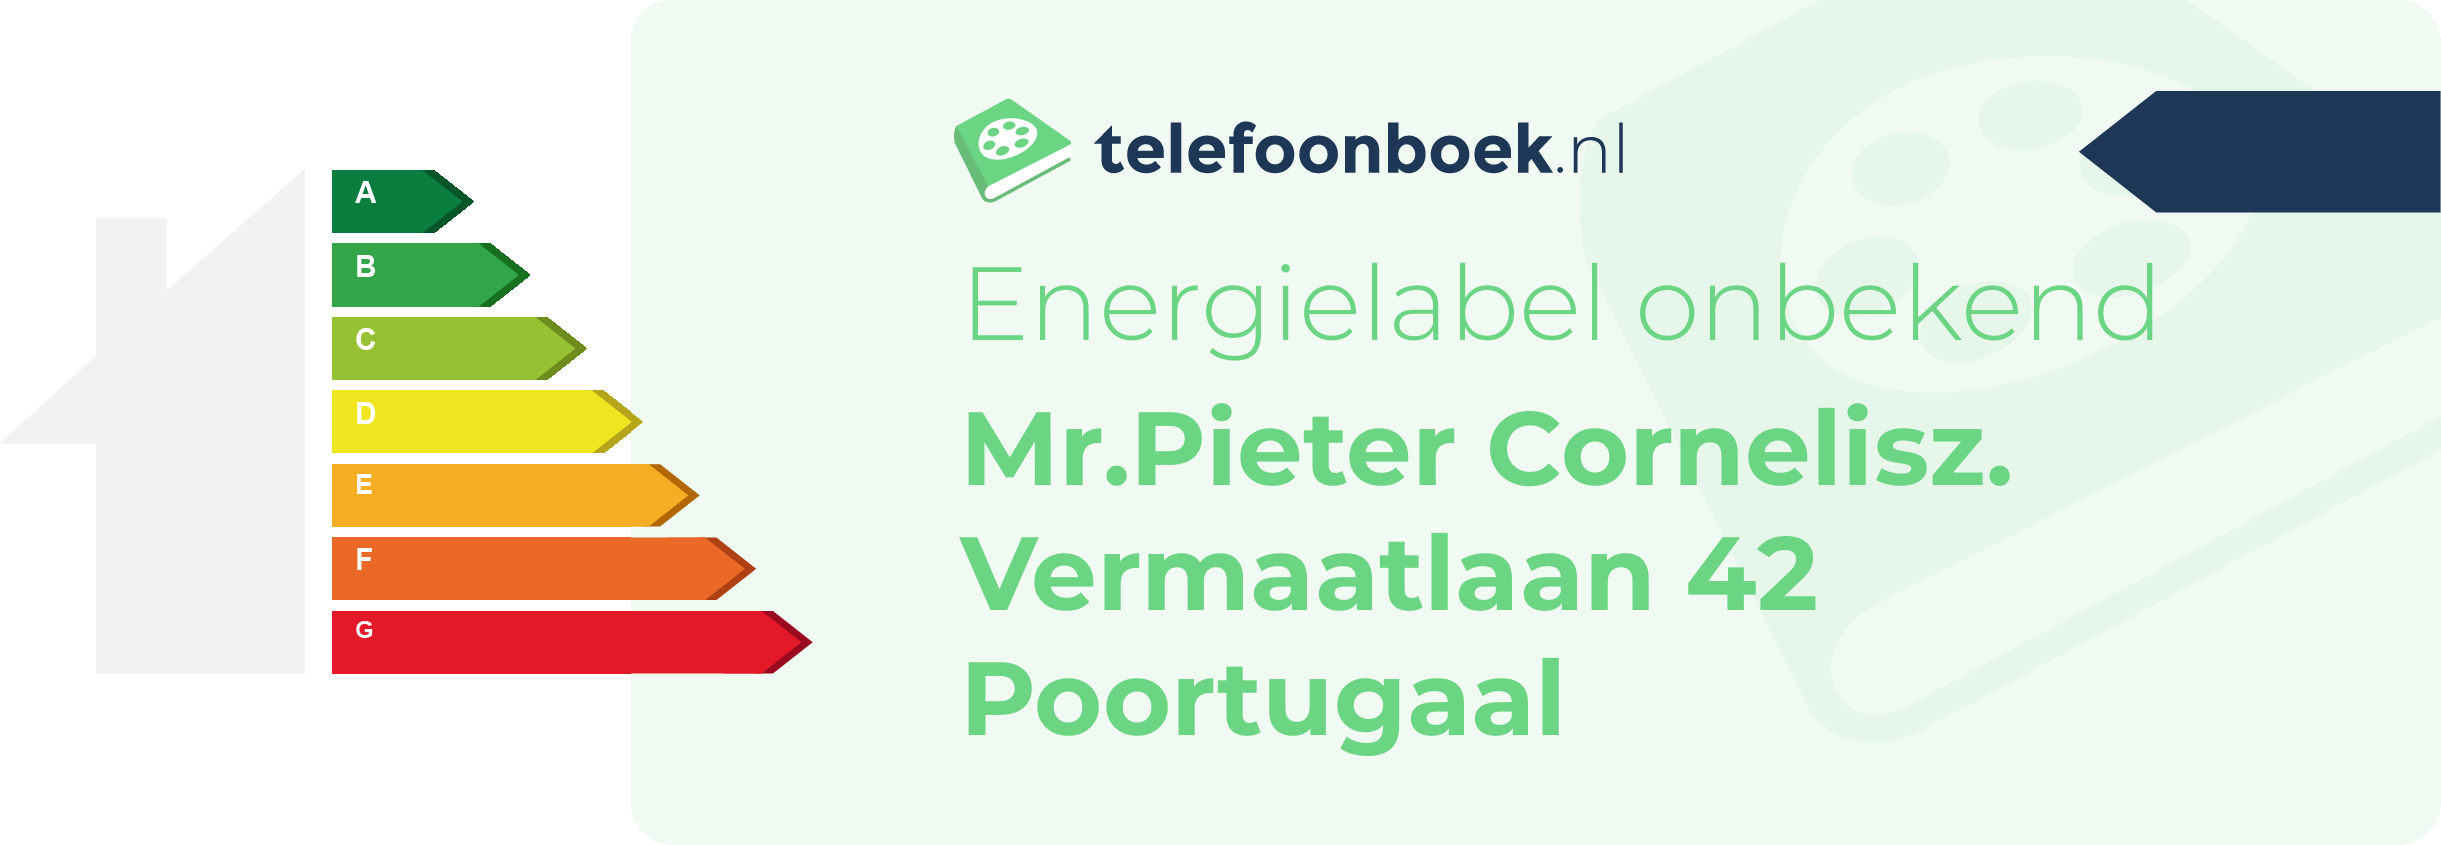 Energielabel Mr.Pieter Cornelisz. Vermaatlaan 42 Poortugaal